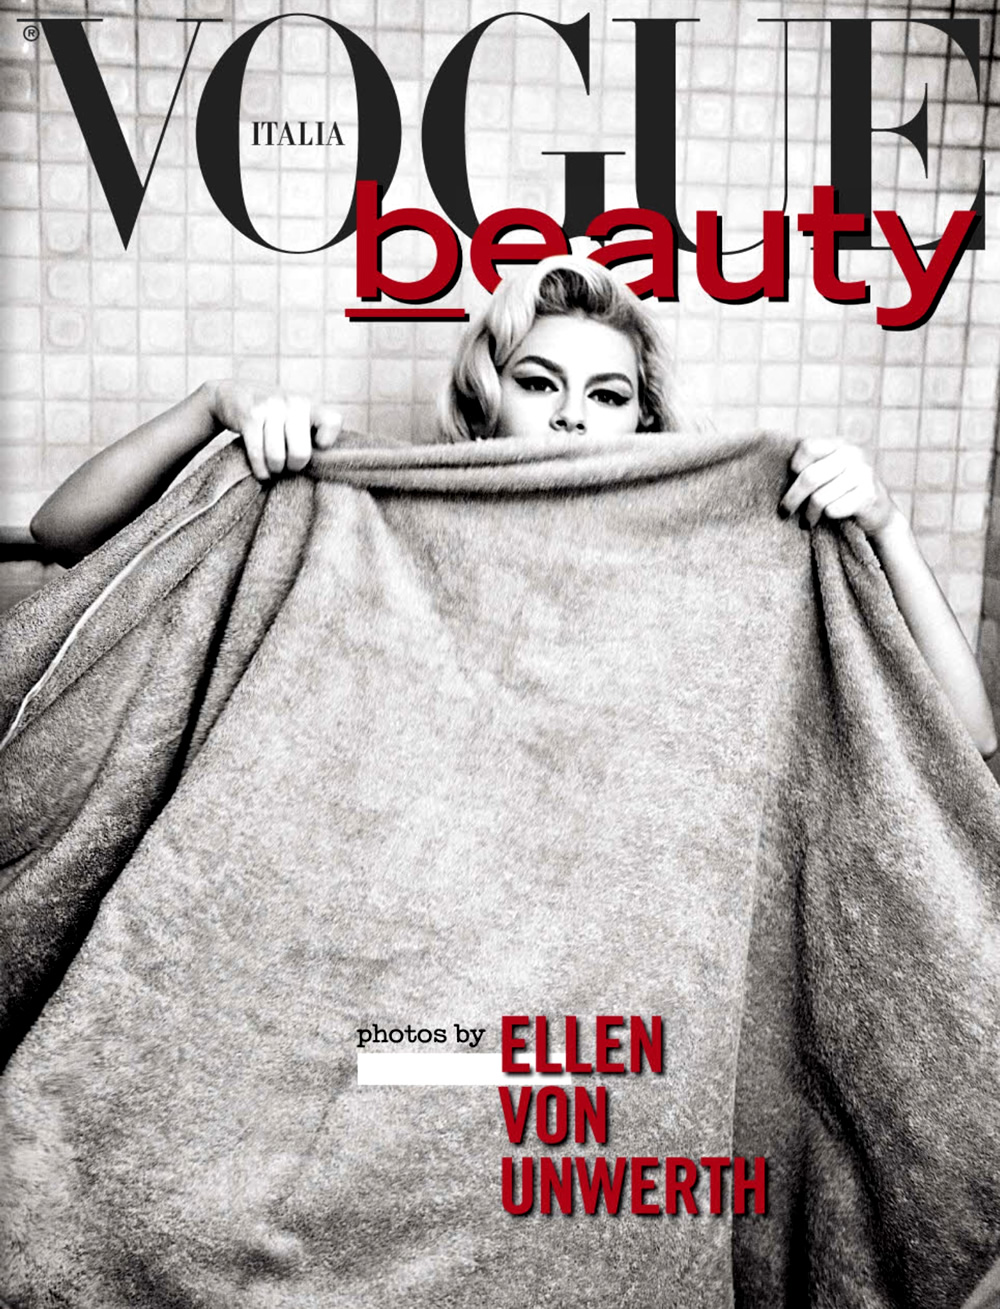 Chloe Hayward by Ellen von Unwerth for Vogue Italia June 2013